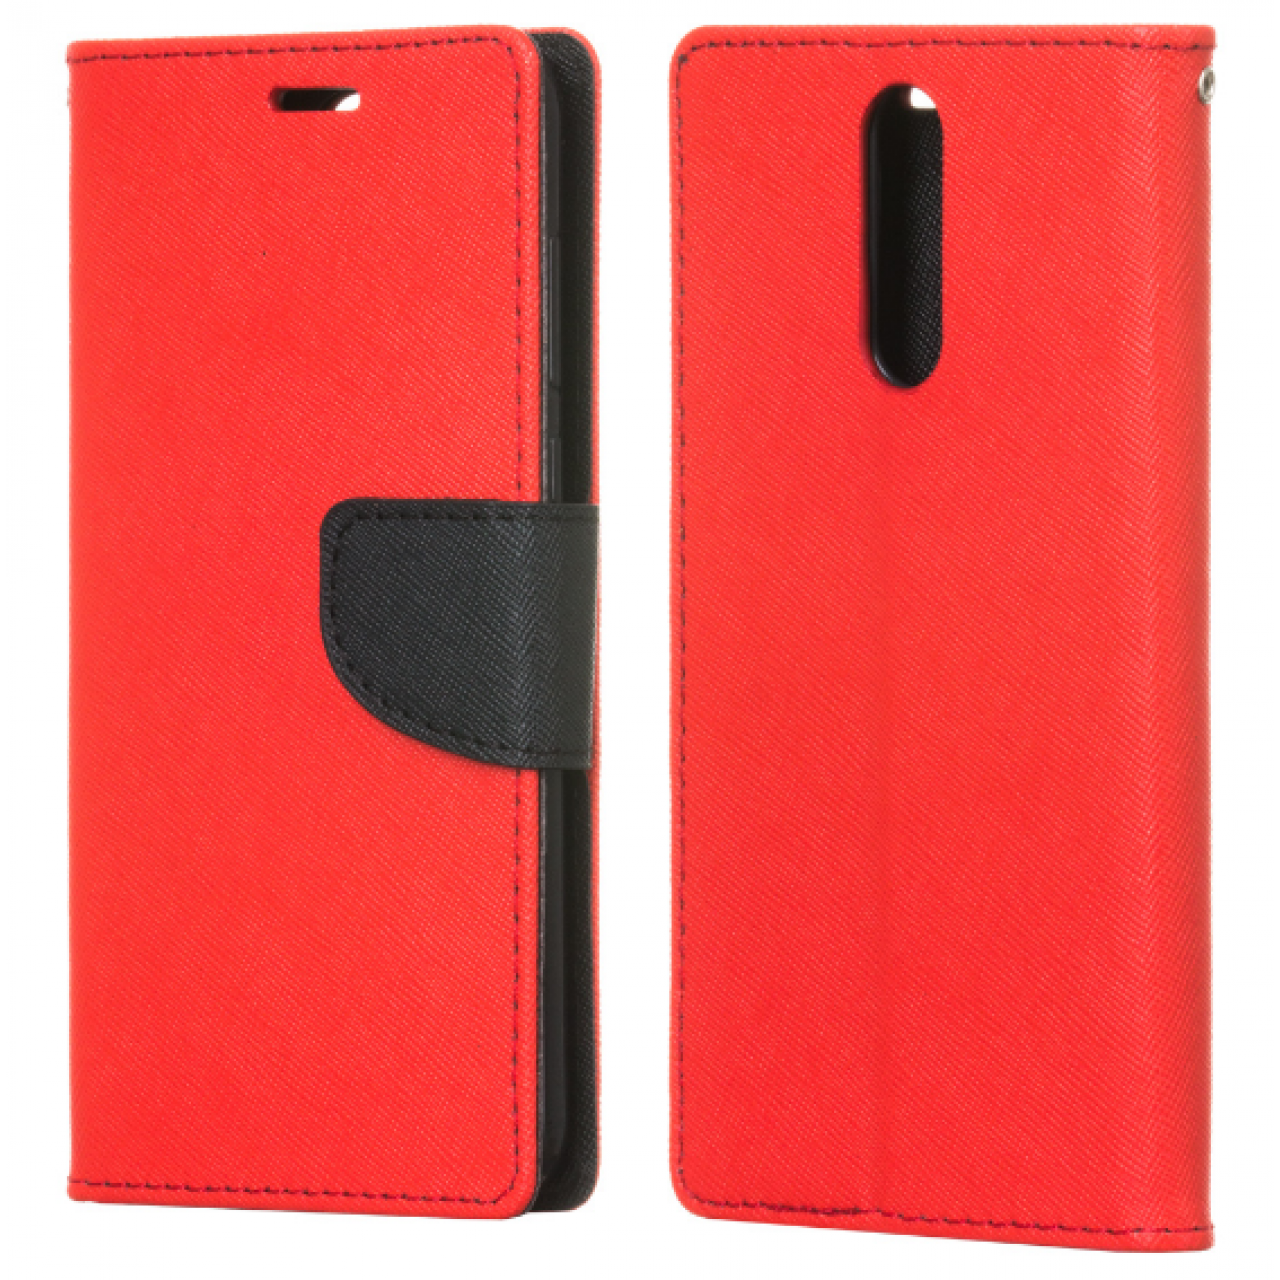 Θήκη Huawei Mate 10 Lite PU Leather Πορτοφόλι flip Fancy Diary - 3796 - Κόκκινο - OEM